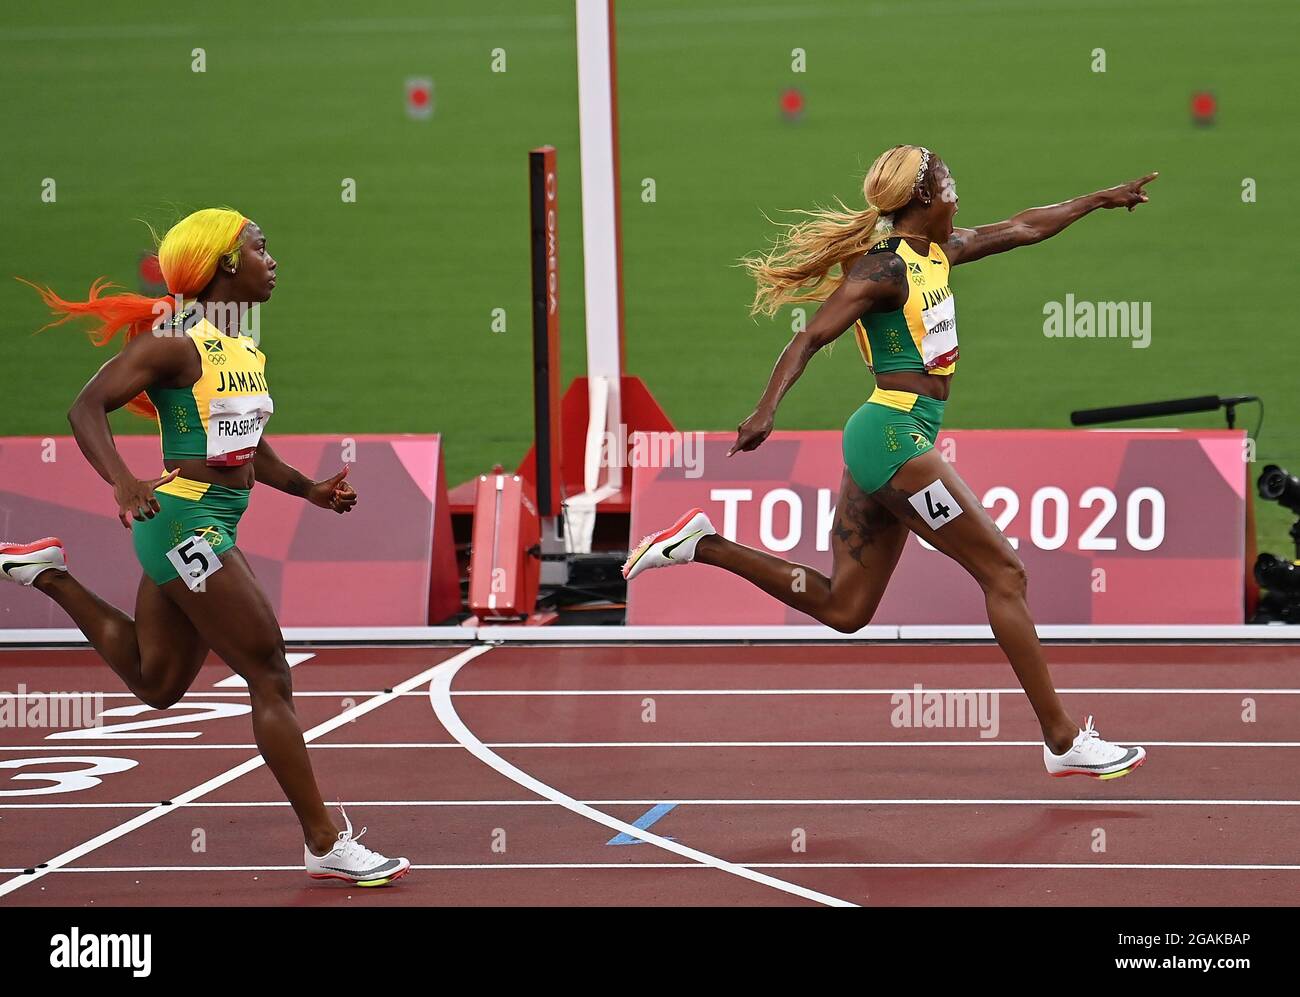 Tokyo, Japon. 31 juillet 2021. Elaine Thompson-Herah (R) de la Jamaïque réagit lors de la finale du 100m féminin aux Jeux Olympiques de Tokyo 2020 à Tokyo, au Japon, le 31 juillet 2021. Crédit: Li Yibo/Xinhua/Alay Live News Banque D'Images